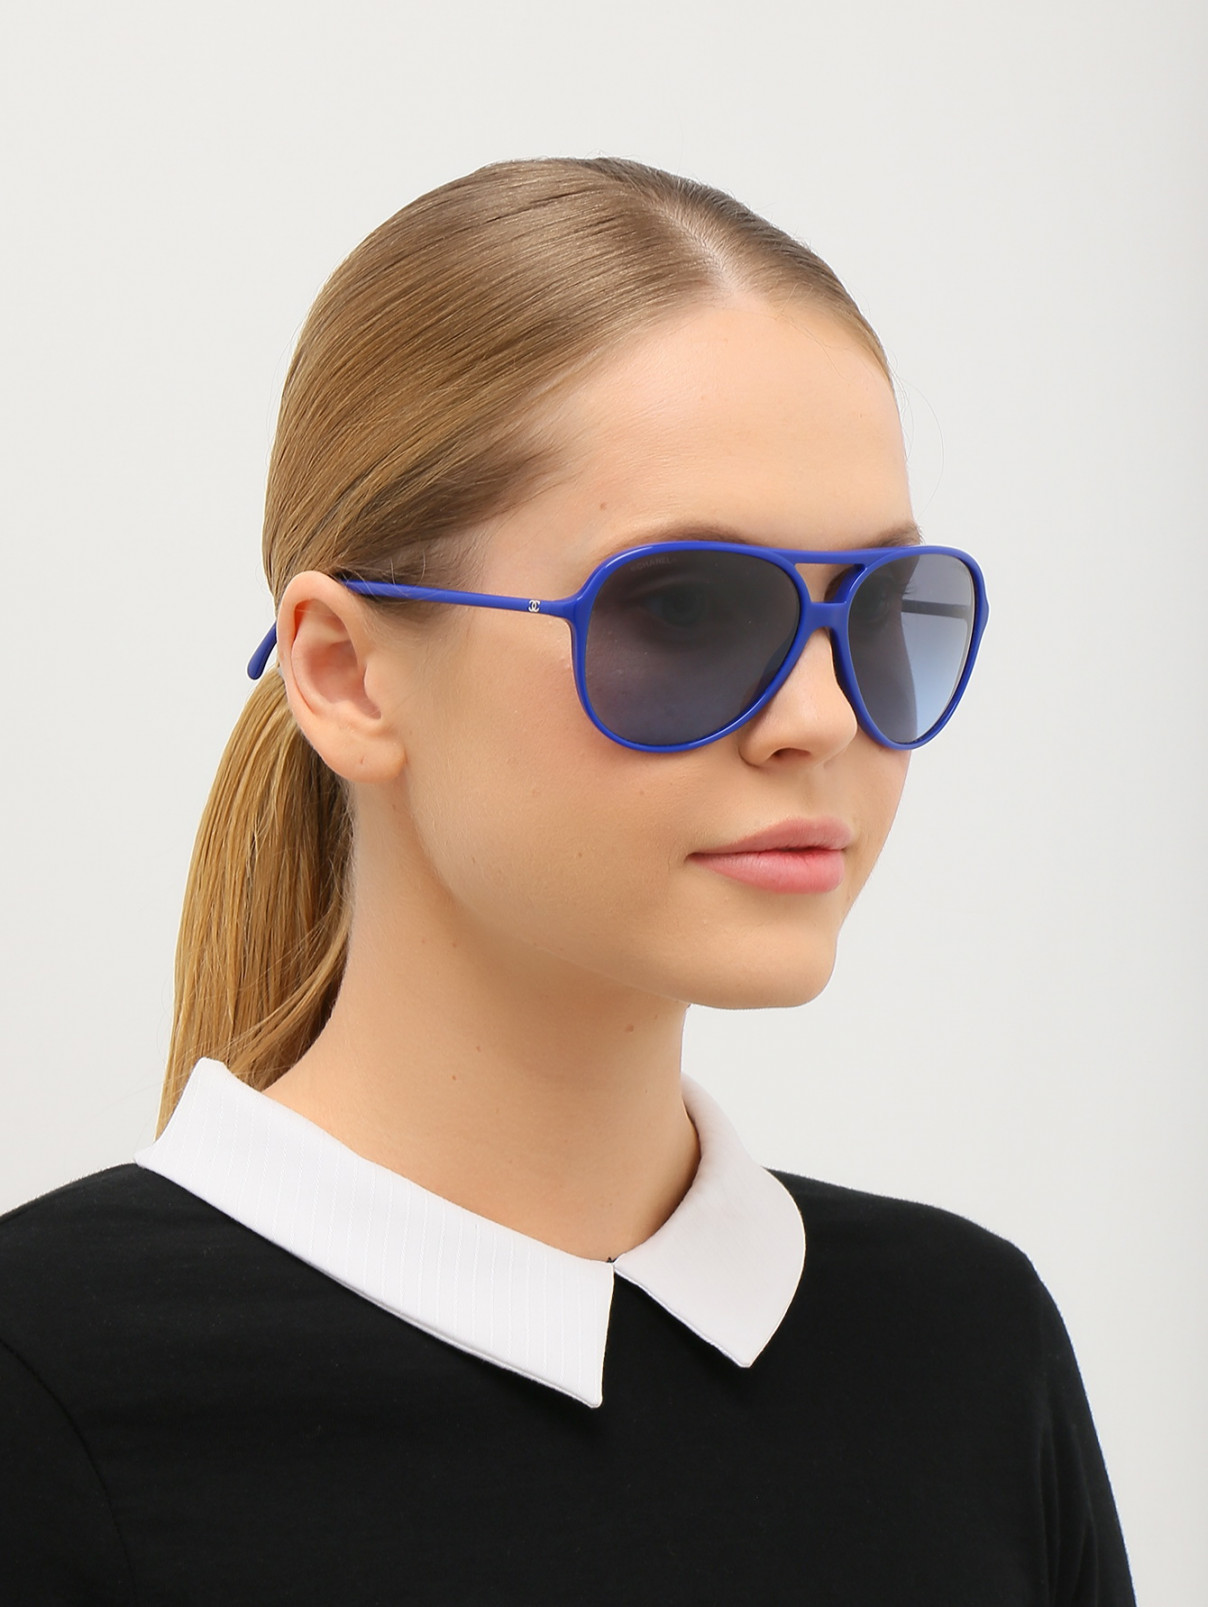 Солнцезащитные очки "авиатор" в пластиковой контрастной оправе Chanel  –  Модель Общий вид  – Цвет:  Синий